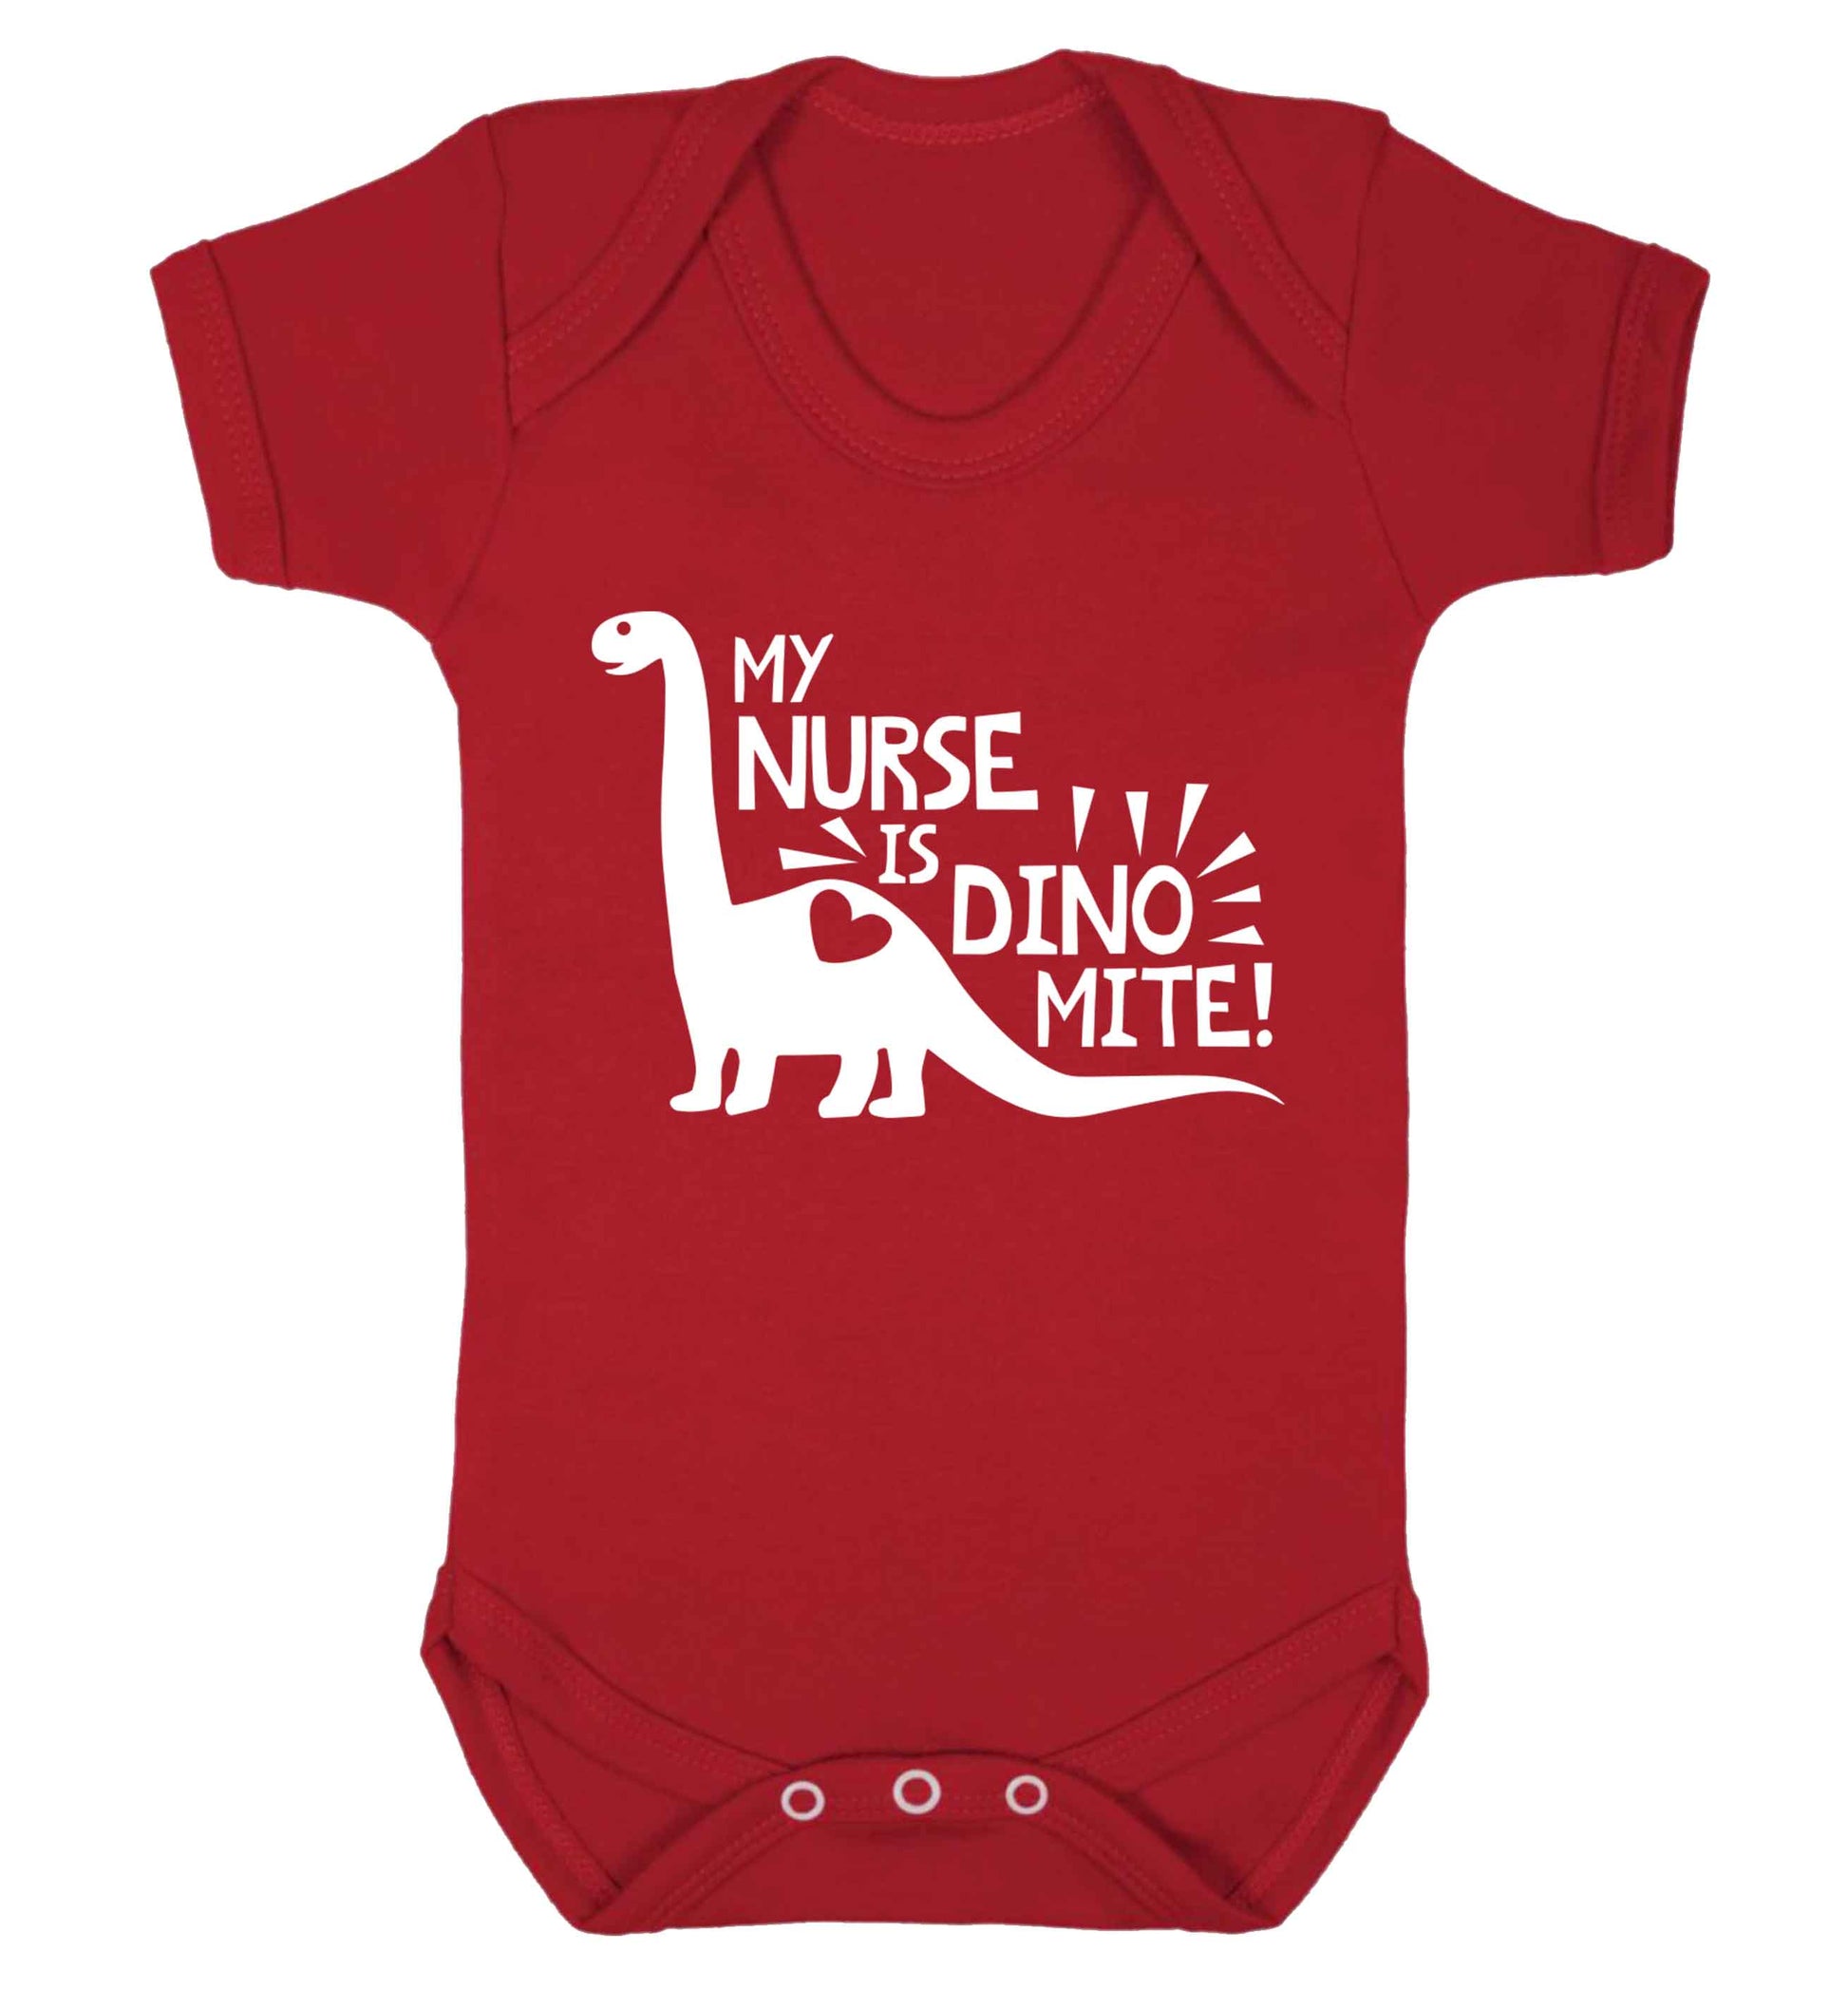 My nurse is dinomite! Baby Vest red 18-24 months